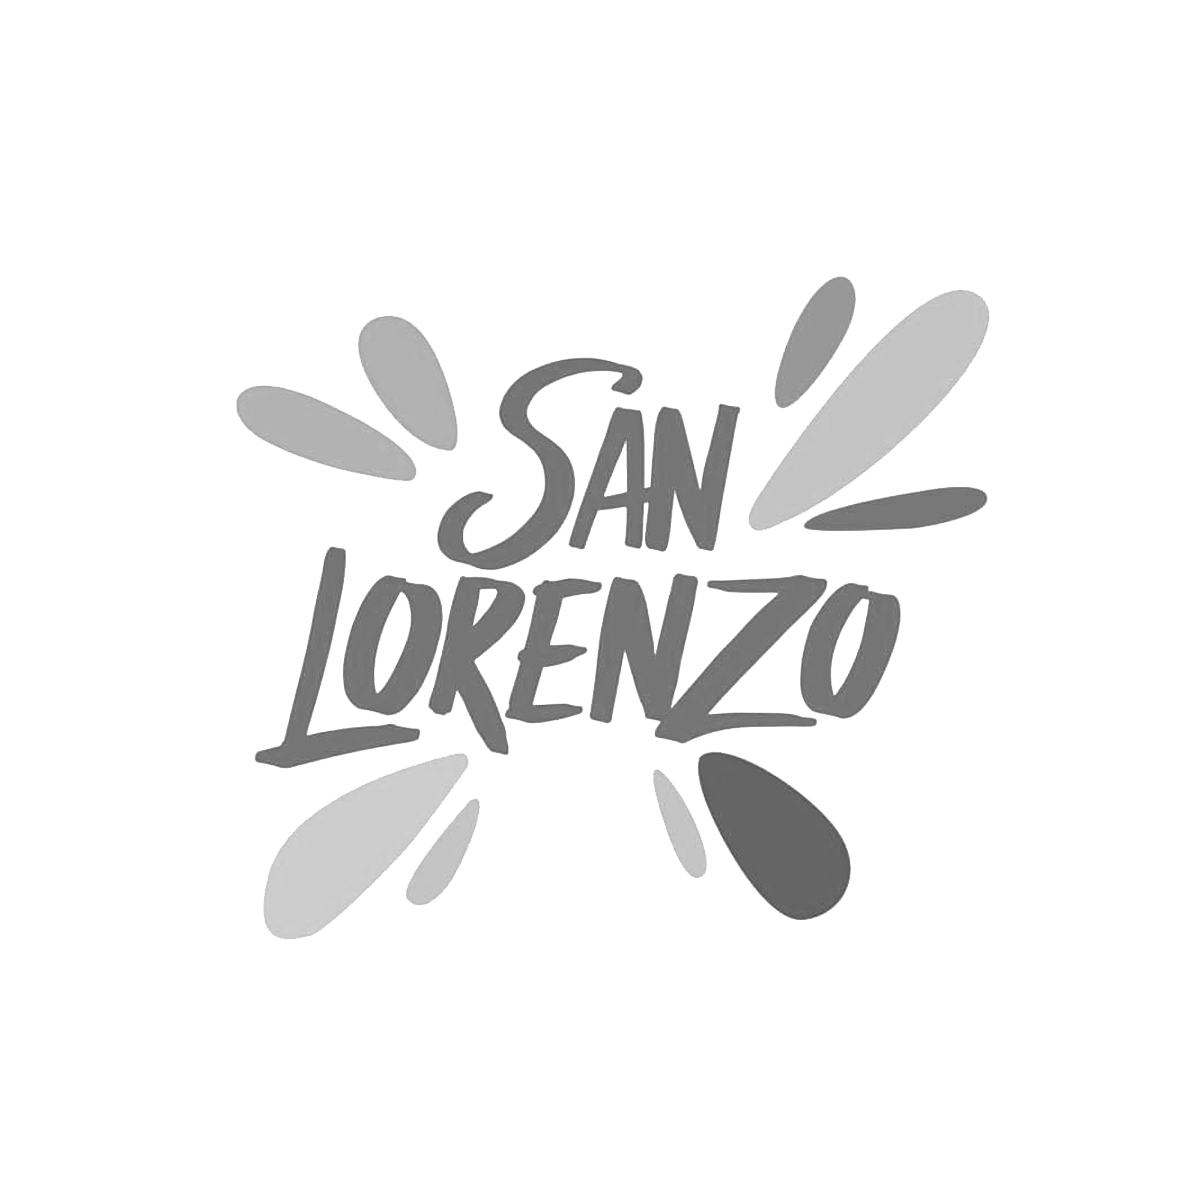 Municipalidad San Lorenzo